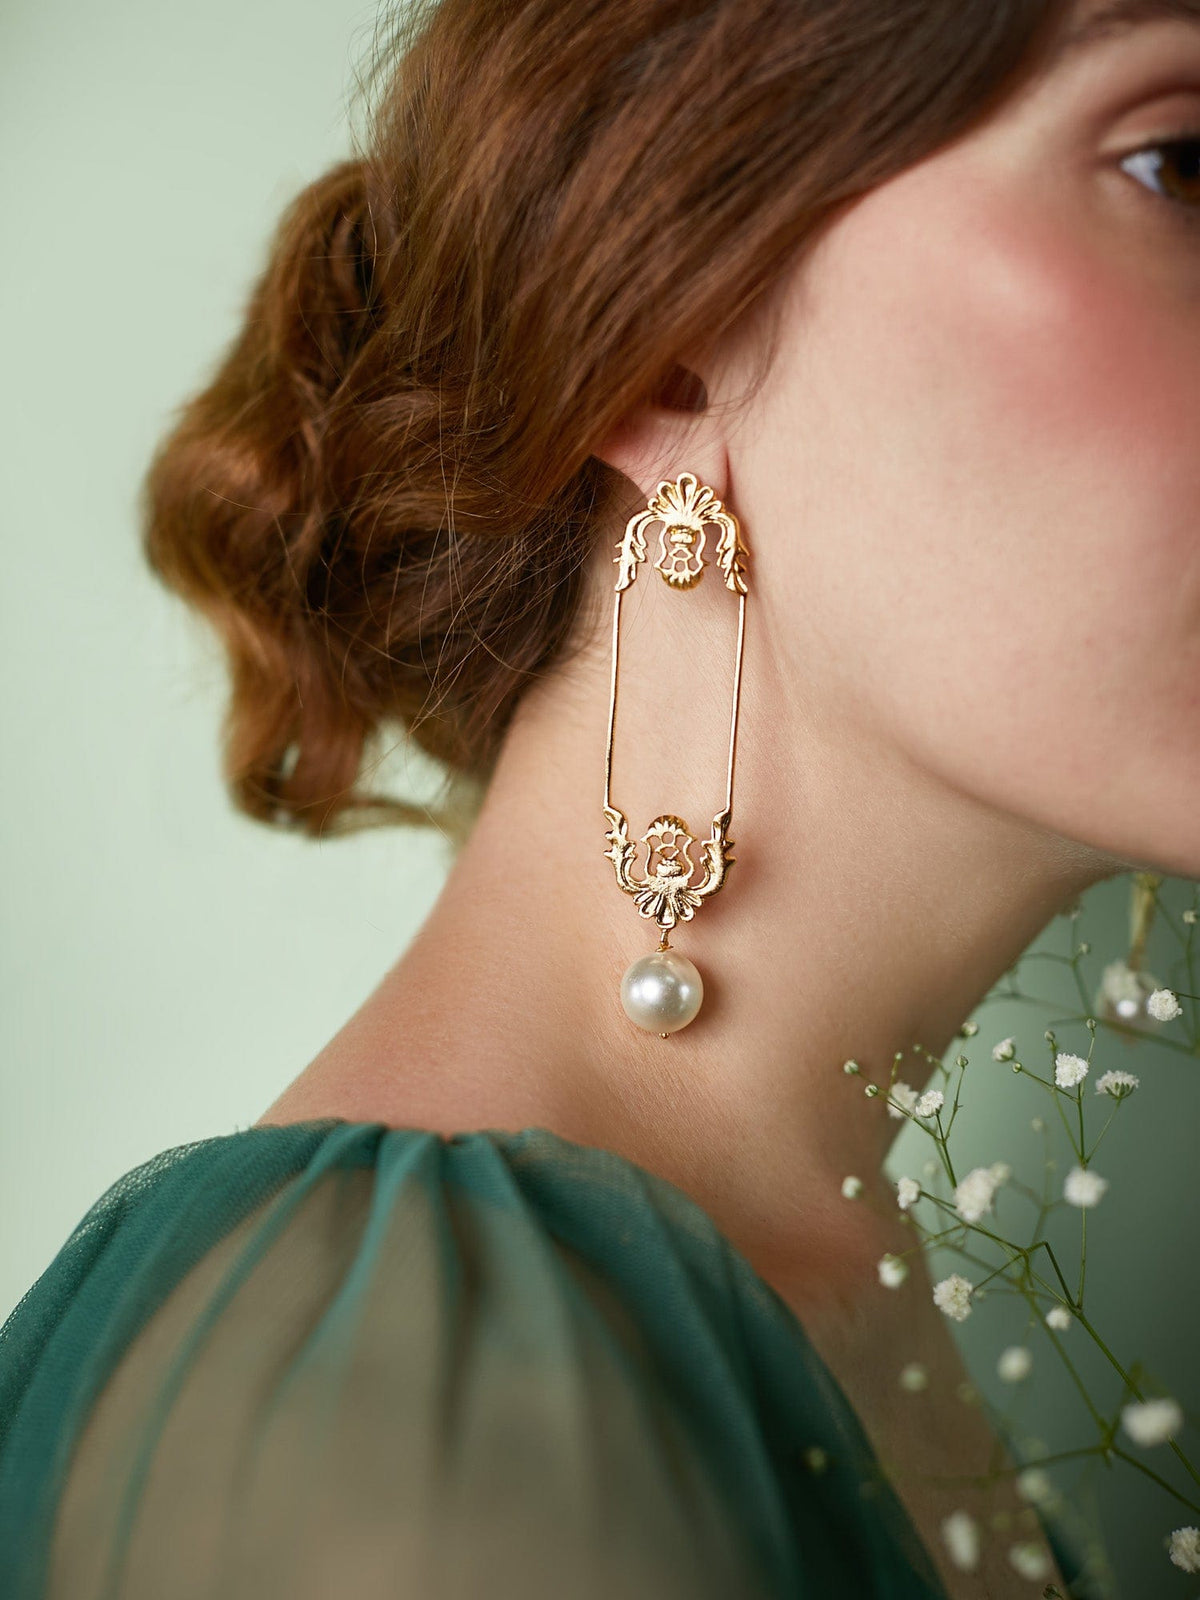 Les Tuileries earrings